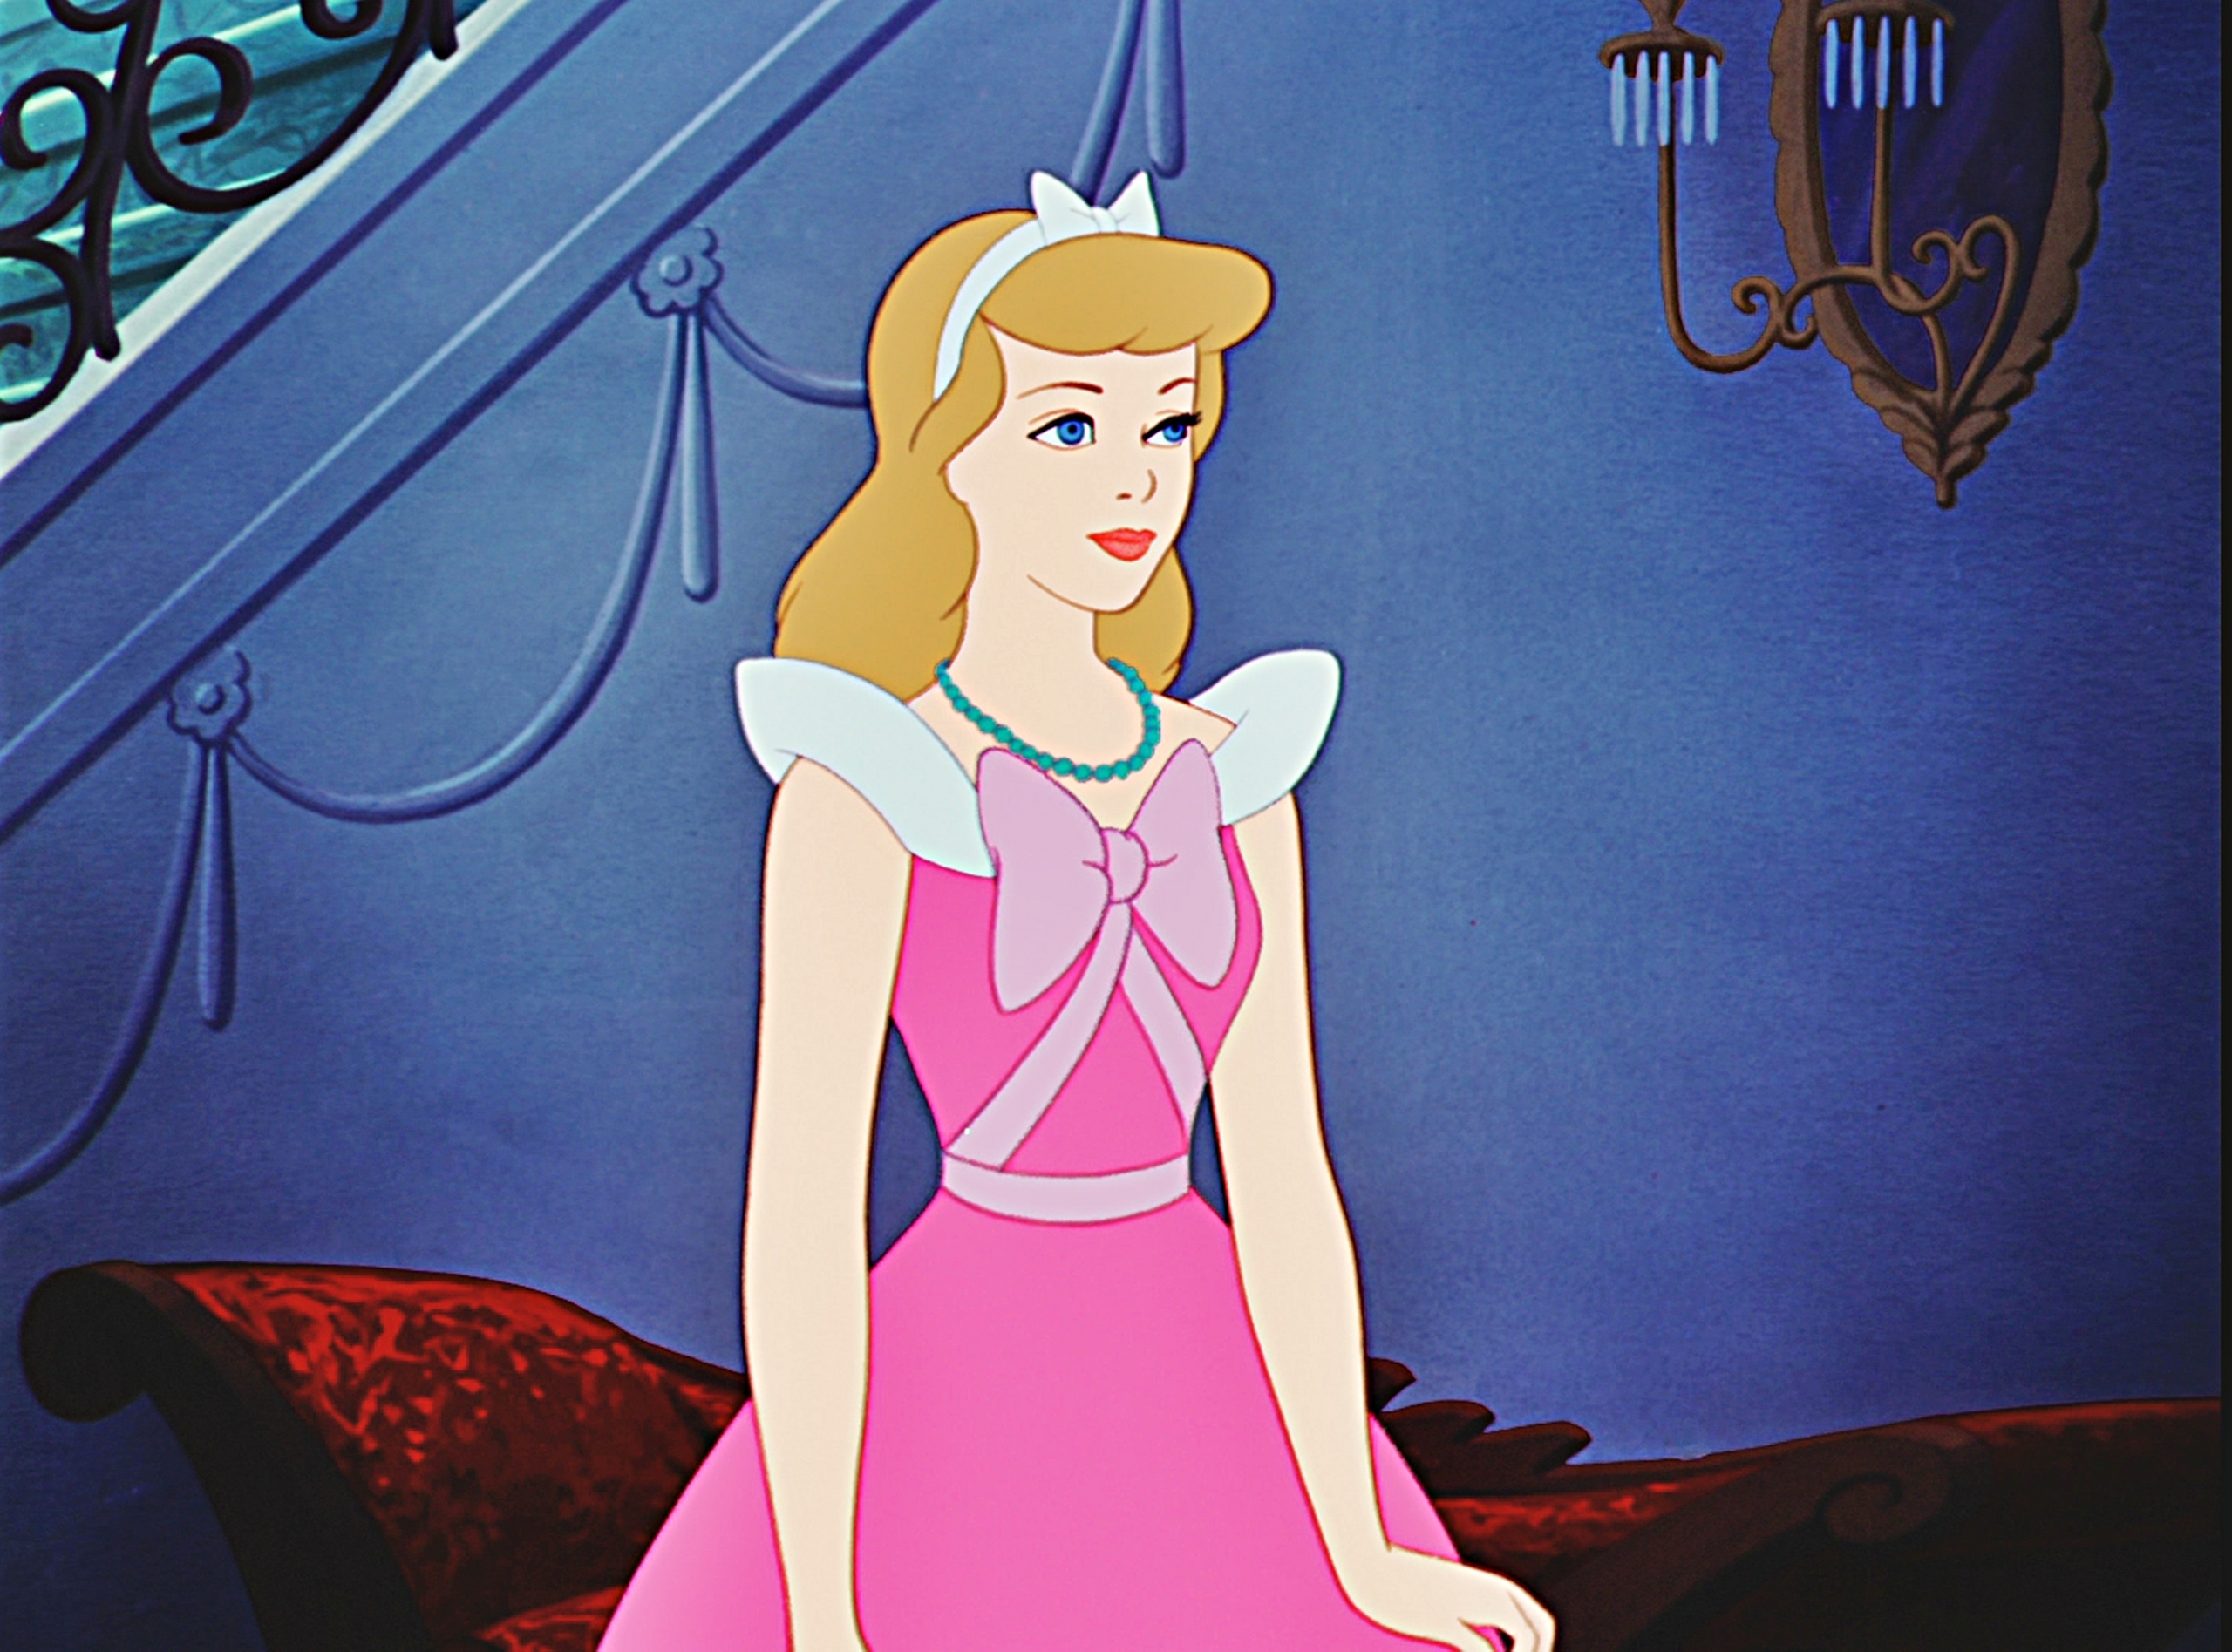 Cinderella,仙杜瑞拉,仙德瑞拉,仙杜丽娜,仙蒂,Princess,公主,灰姑娘,Золушка,仙履奇缘,Disney,迪士尼